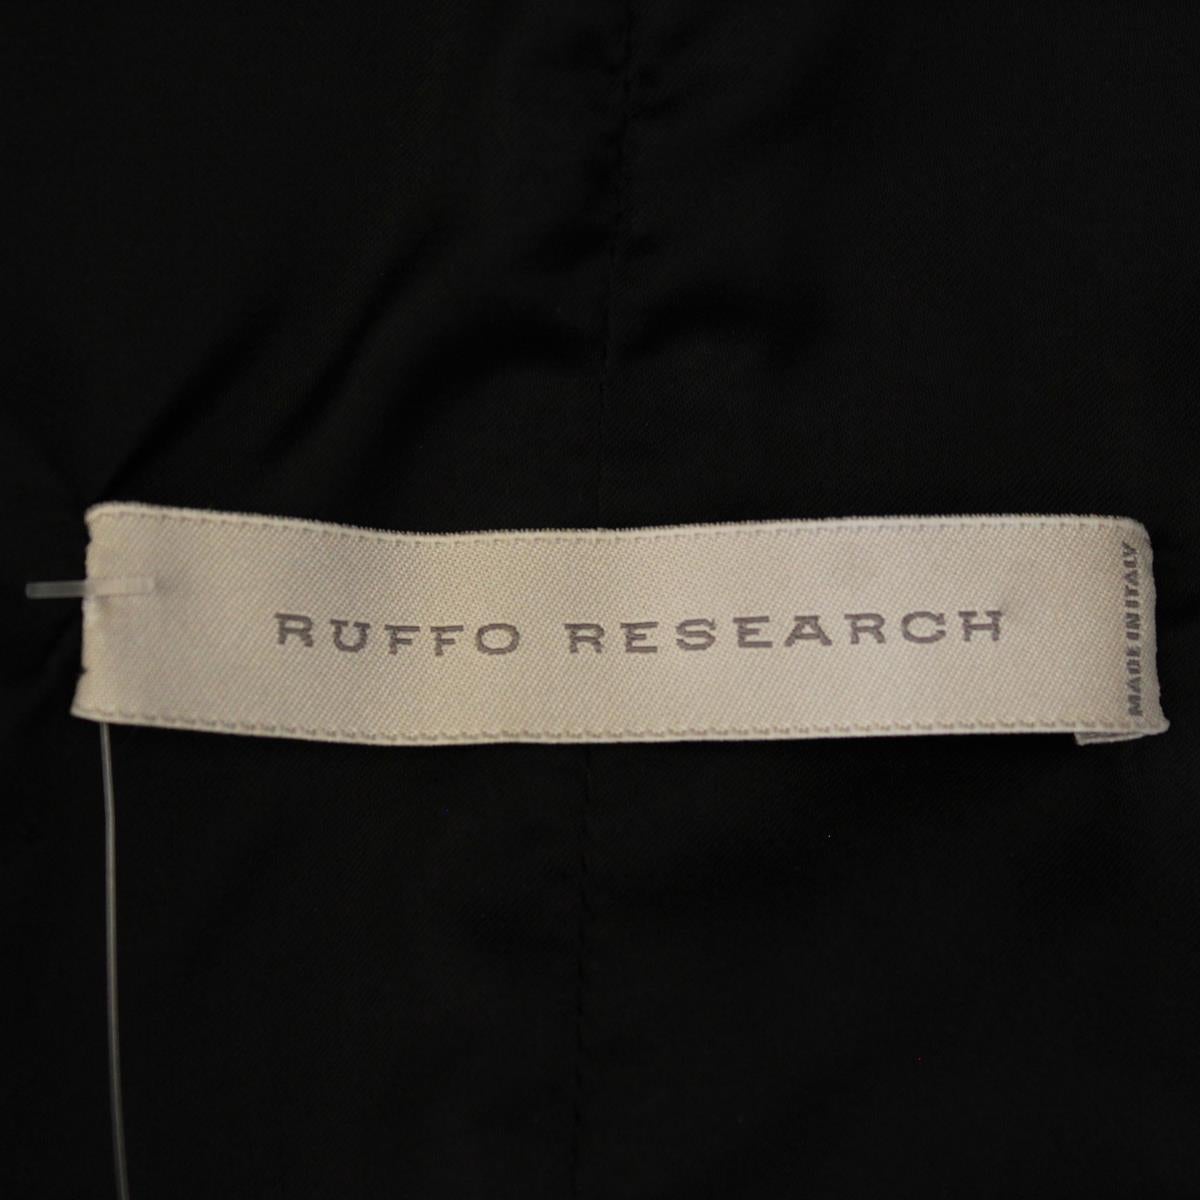 Ruffo Research Italy Veste en nappa IT42 1